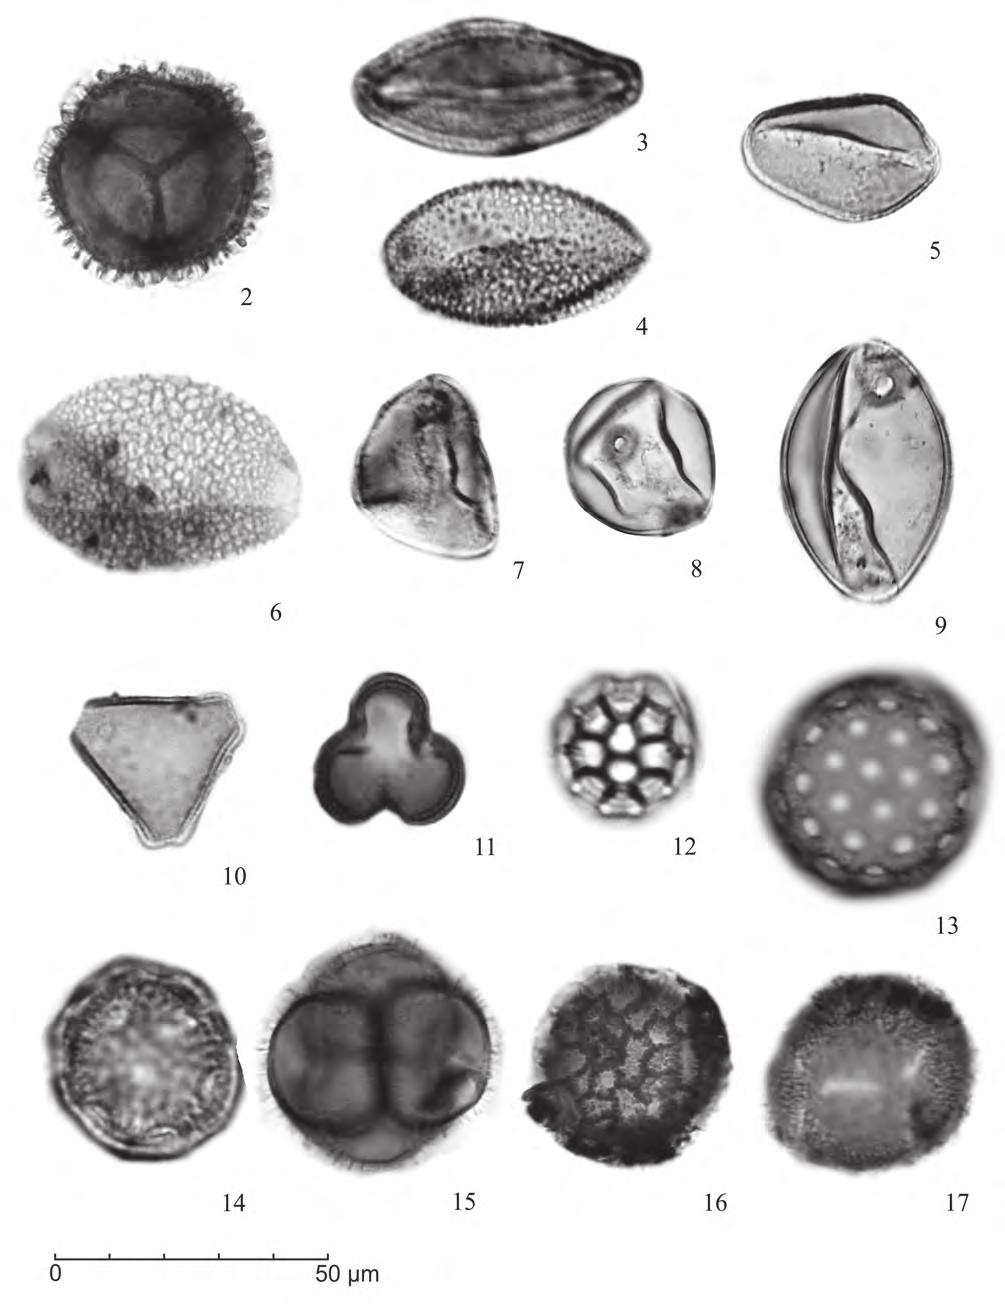 Grãos de pólen de angiospermas do Holoceno (7908±30 anos AP-atual) da Planície Costeira sul-catarinense, Brasil Figura 2. Fotomicrografias grão de pólen de angiospermas: 2. Drimys brasiliensis; 3.